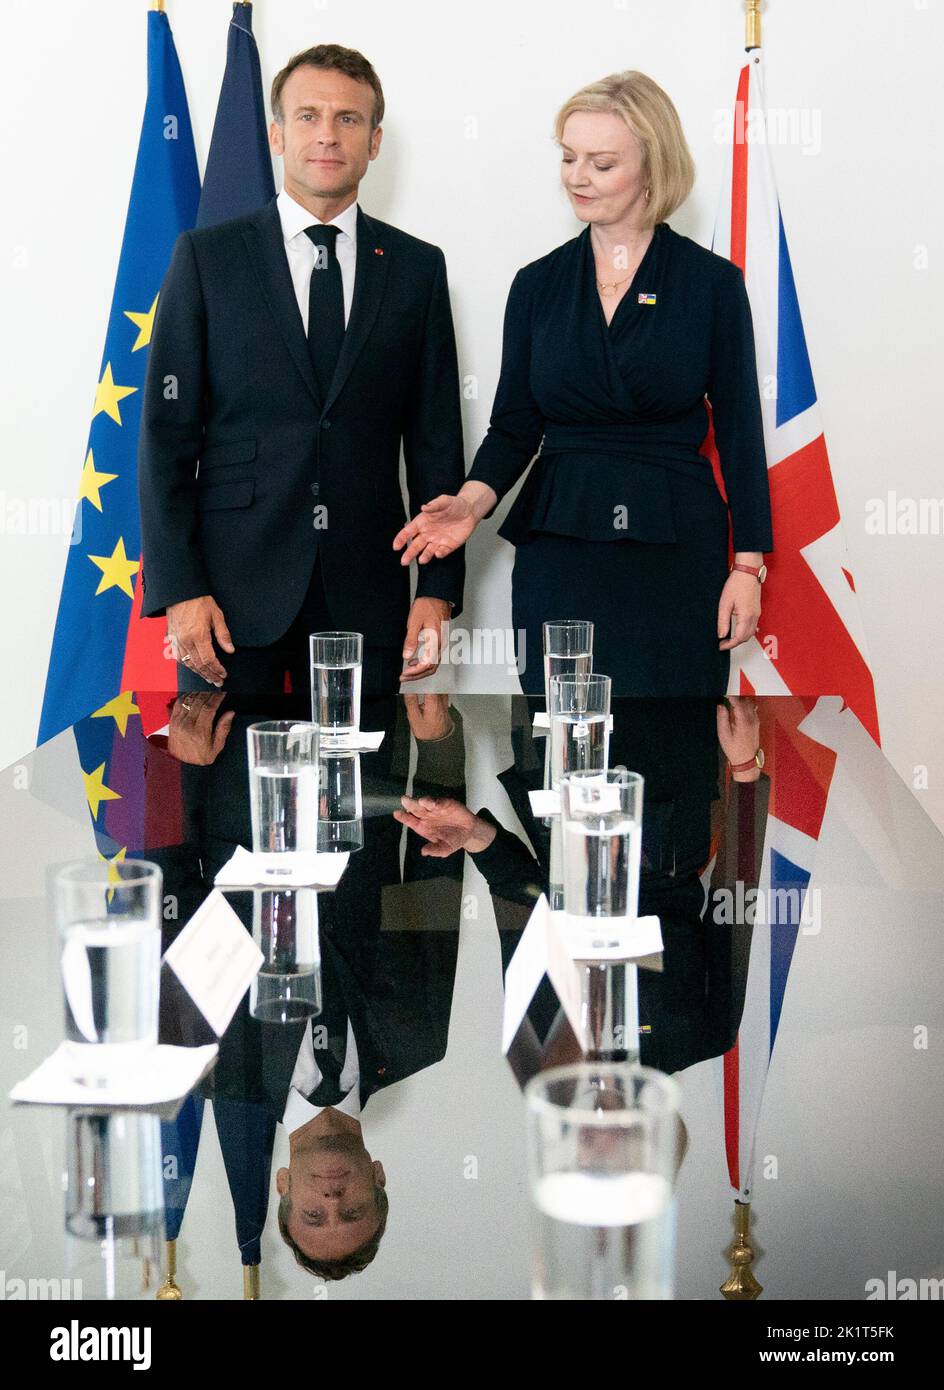 La primera ministra Liz Truss (derecha) celebra una reunión bilateral con el presidente de Francia, Emmanuel Macron, en la sede de las Naciones Unidas en Nueva York, durante su visita a Estados Unidos para asistir a la Asamblea General de las Naciones Unidas de 77th. Fecha de la foto: Martes 20 de septiembre de 2022. Foto de stock